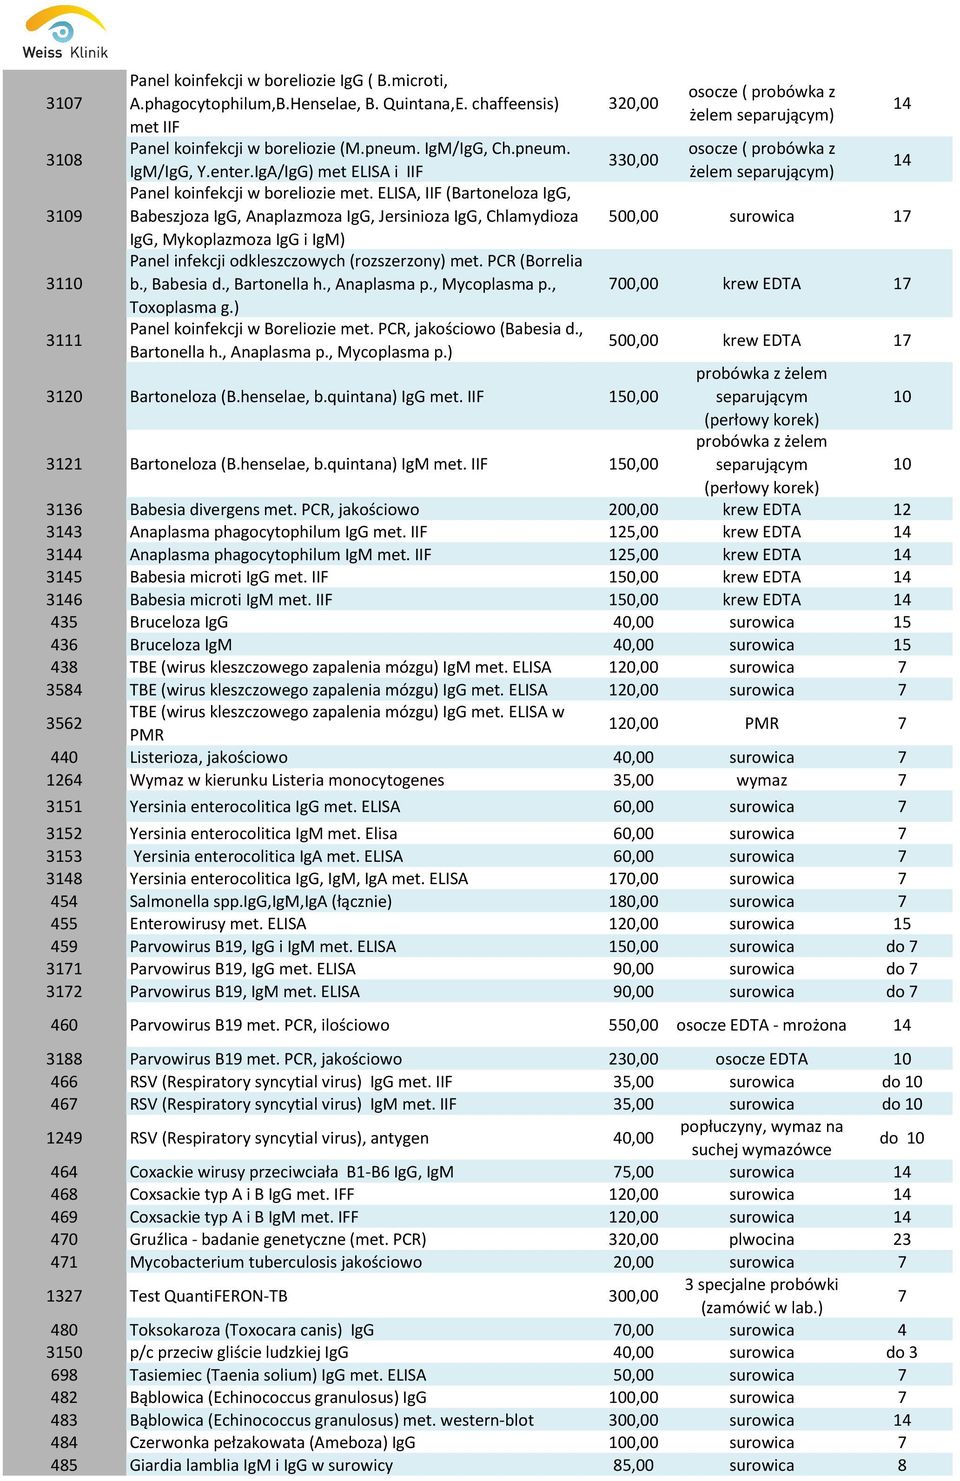 ELISA, IIF (Bartoneloza IgG, Babeszjoza IgG, Anaplazmoza IgG, Jersinioza IgG, Chlamydioza IgG, Mykoplazmoza IgG i IgM) Panel infekcji odkleszczowych (rozszerzony) met. PCR (Borrelia b., Babesia d.